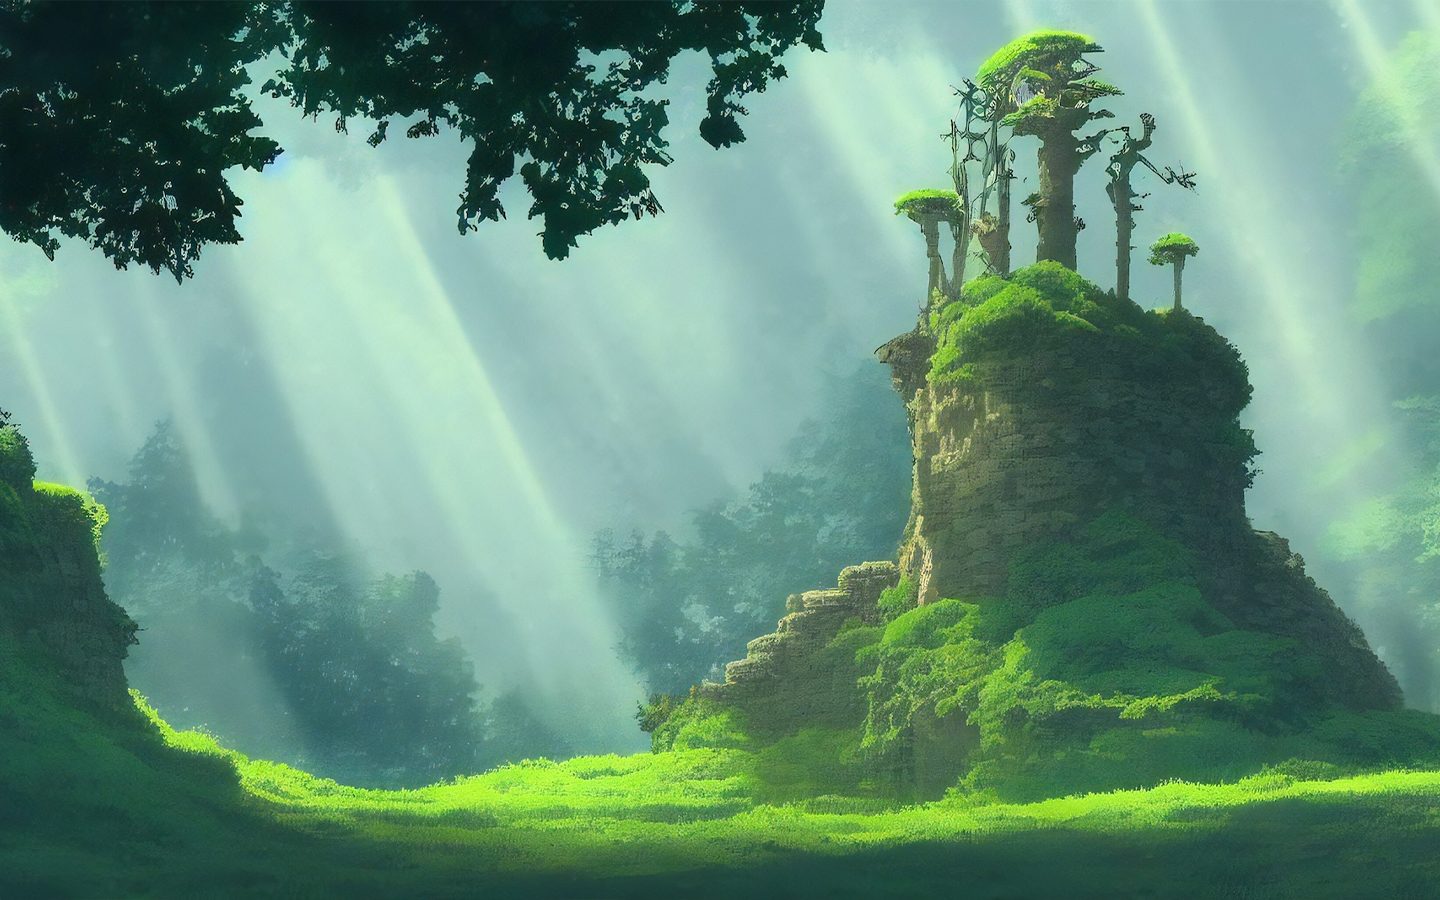 Six Studio Ghibli films by Hayao Miyazaki